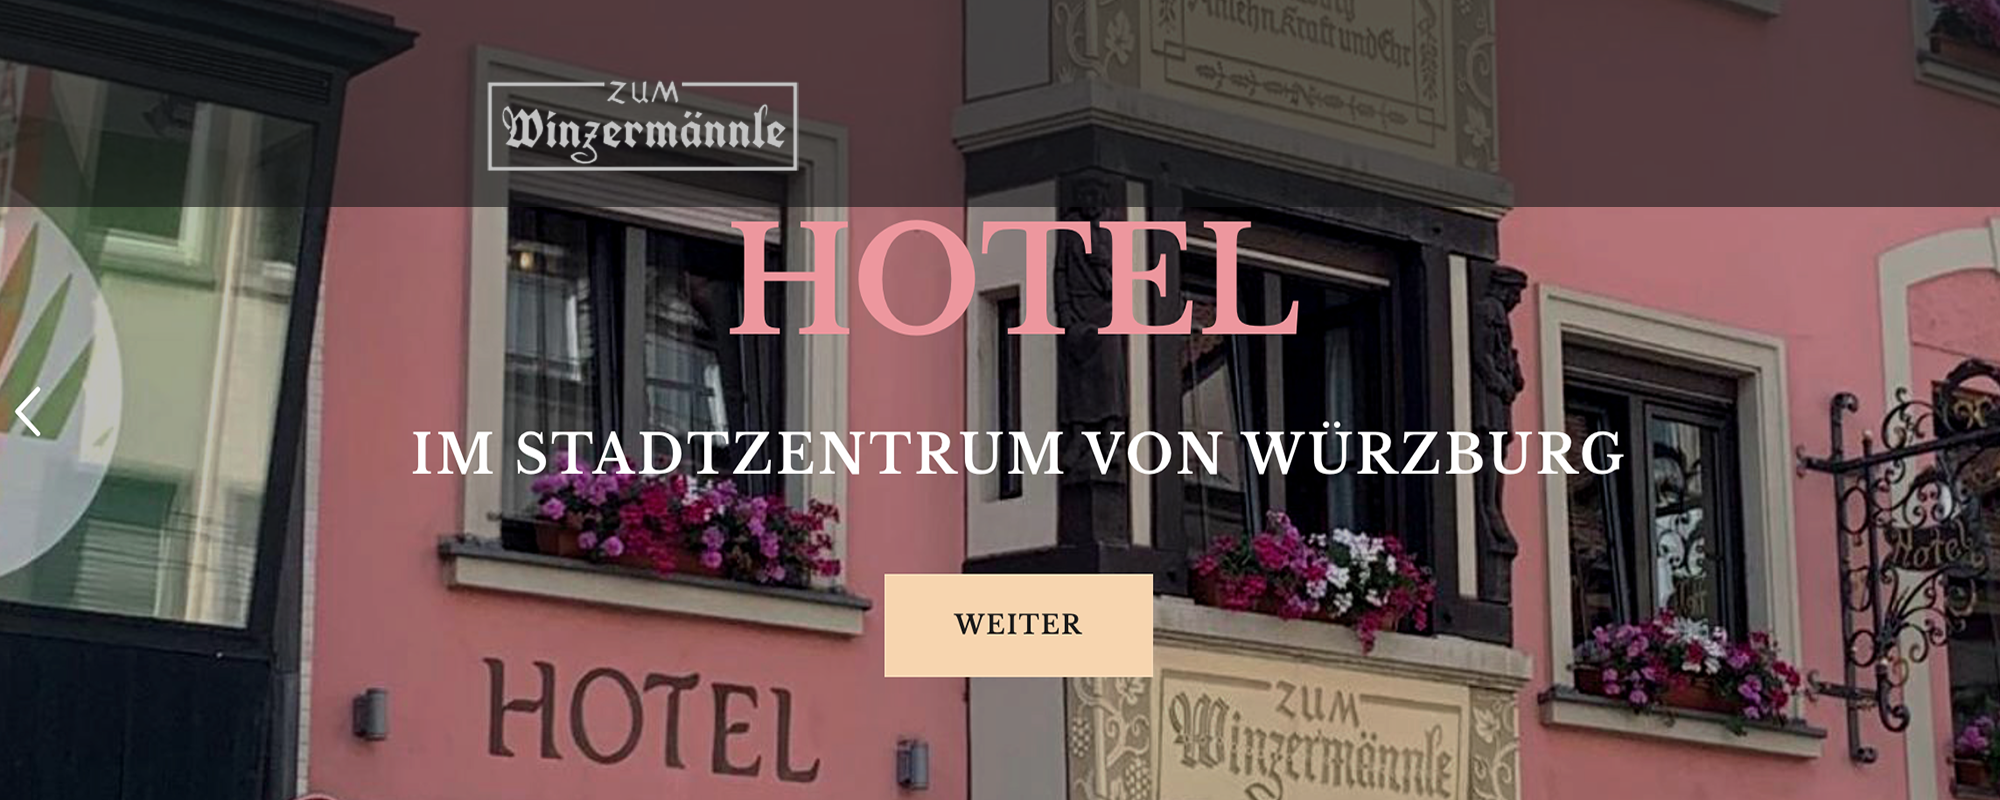 HOTEL ZUM WINZERMÄNNLE